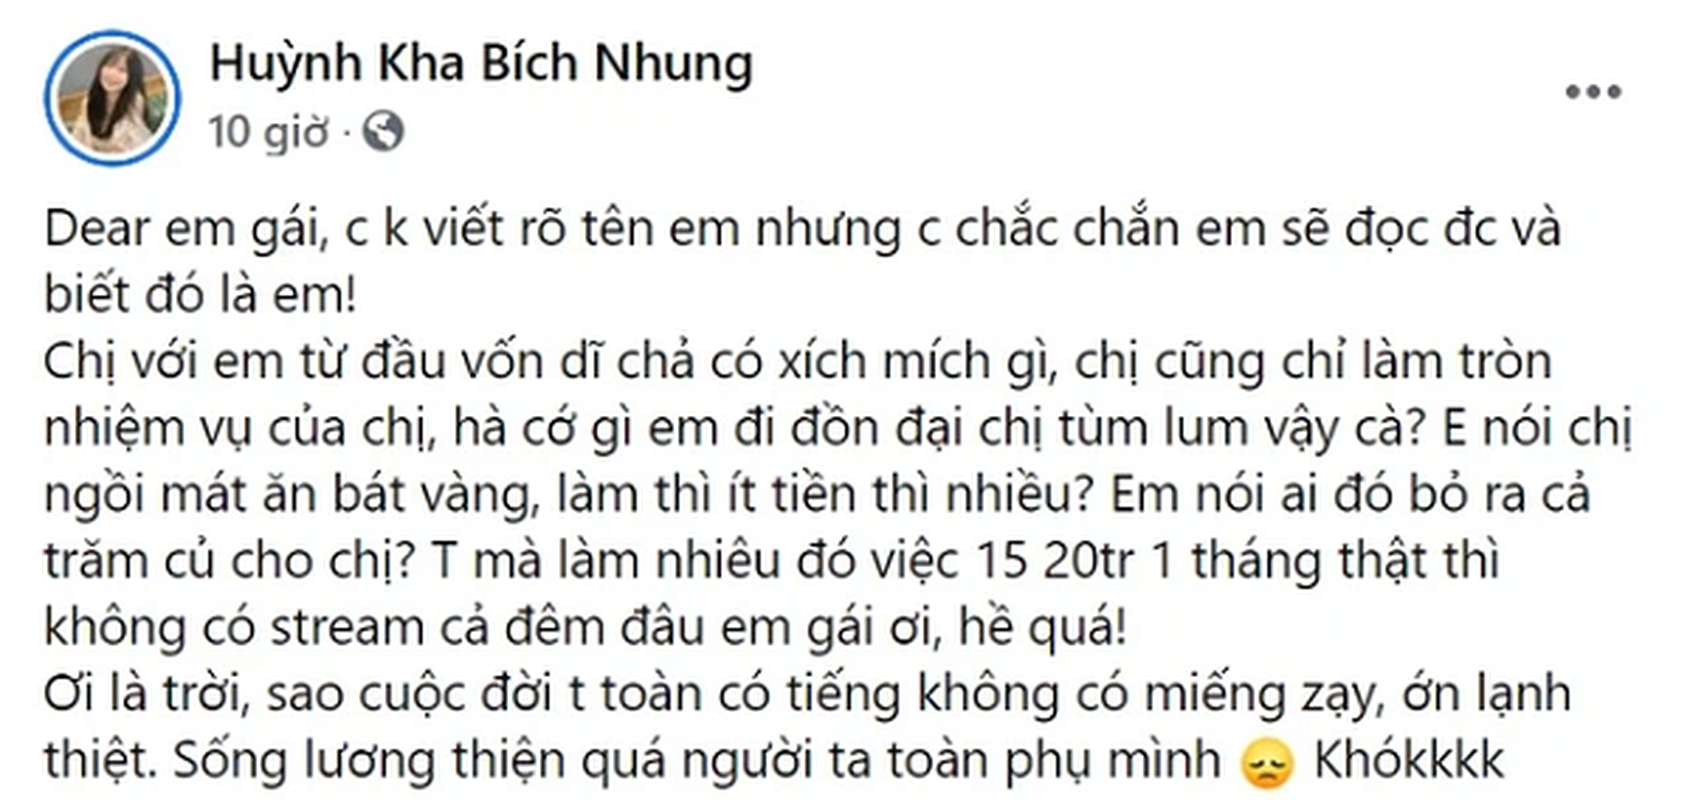 Nu game thu Viet dan mat dan em vi dung chuyen bao nuoi